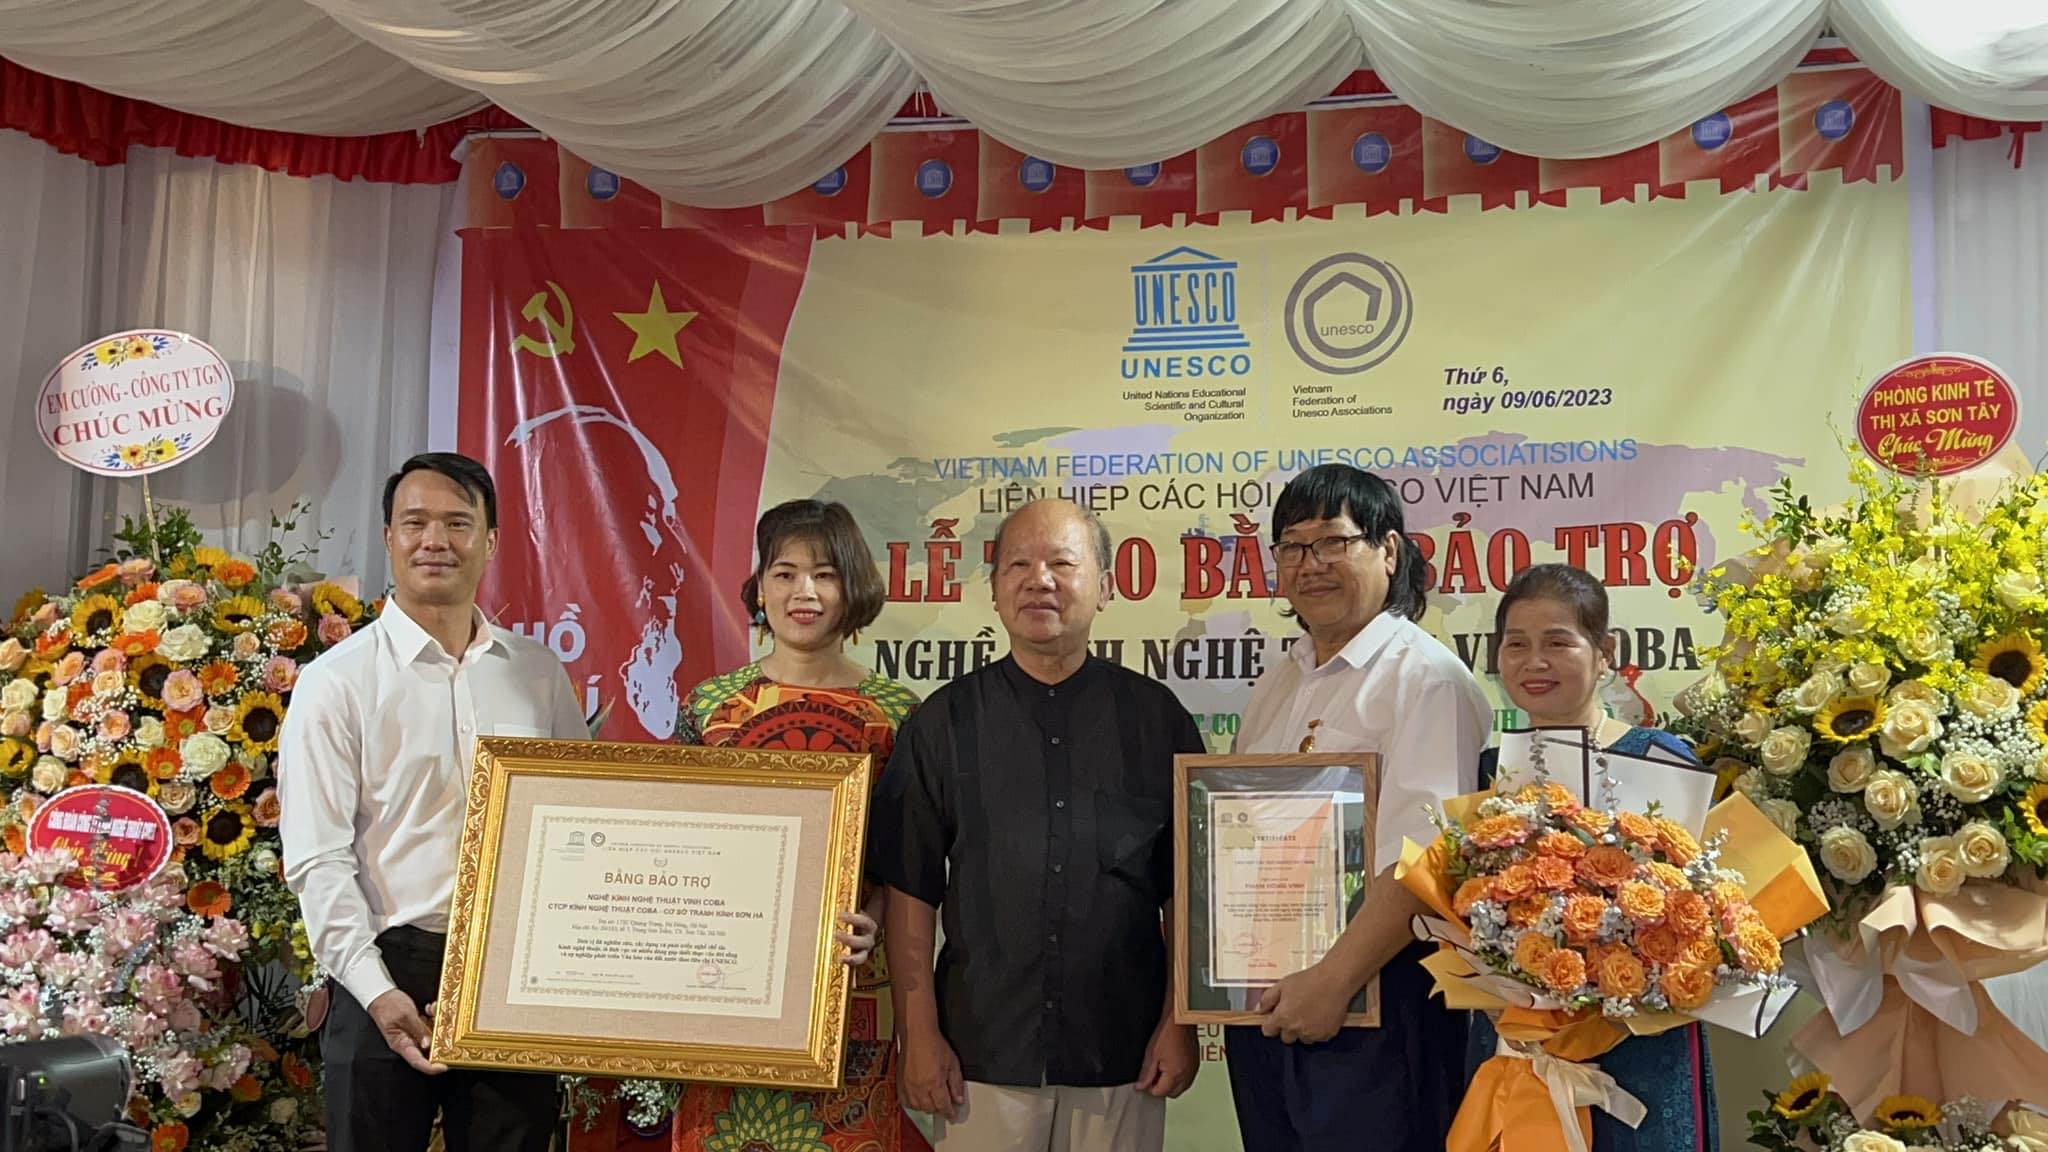 Coba Artglass nhận bằng bảo trợ Nghề kính nghệ thuật Vinh Coba từ UNESCO Việt Nam